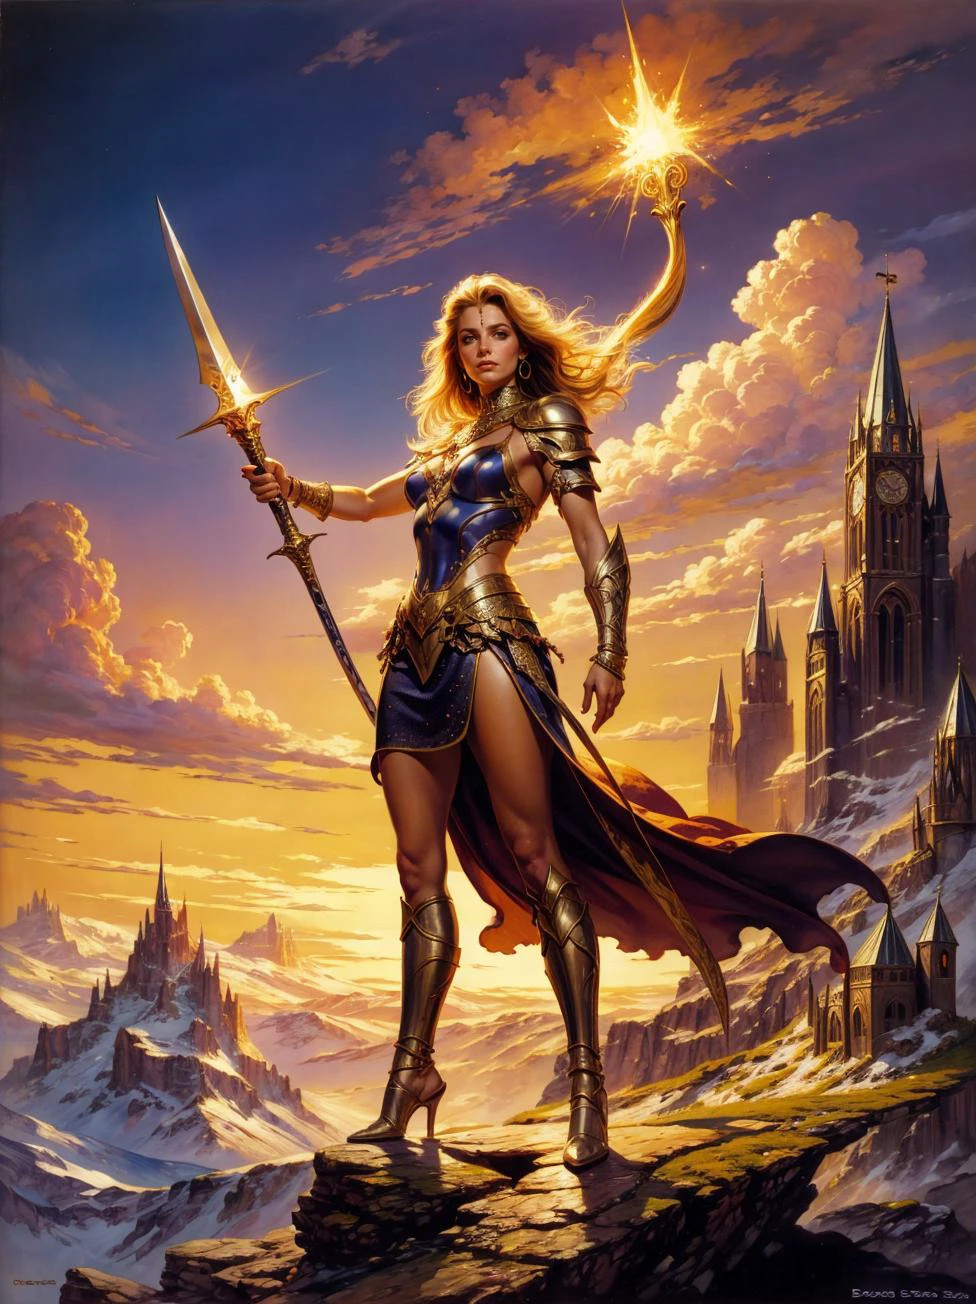 Ein Fantasy-Gemälde von Boris Vallejo, einer wunderschönen Kriegerin im Kettenhemd, ein glühendes Schwert schwingend, triumphierend auf einem Berggipfel stehen. astra_1_BV